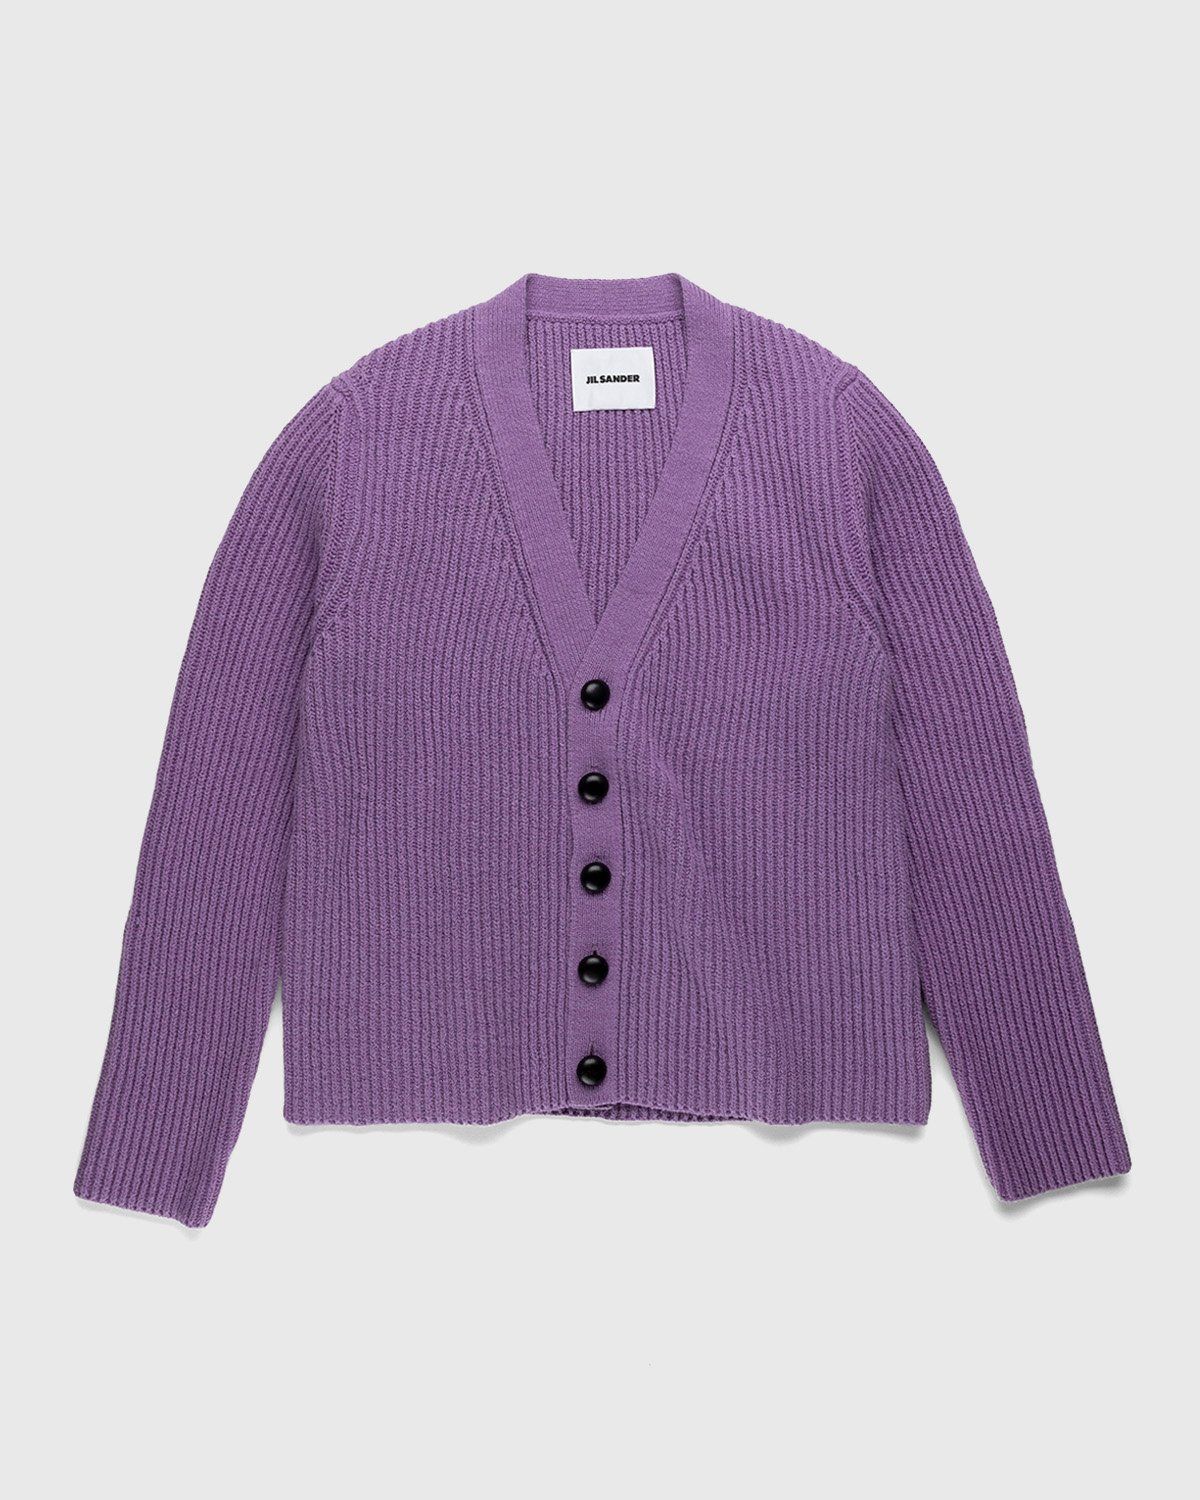 Jil Sander – Rib Knit Cardigan Medium Purple - Knitwear - Purple - Image 1